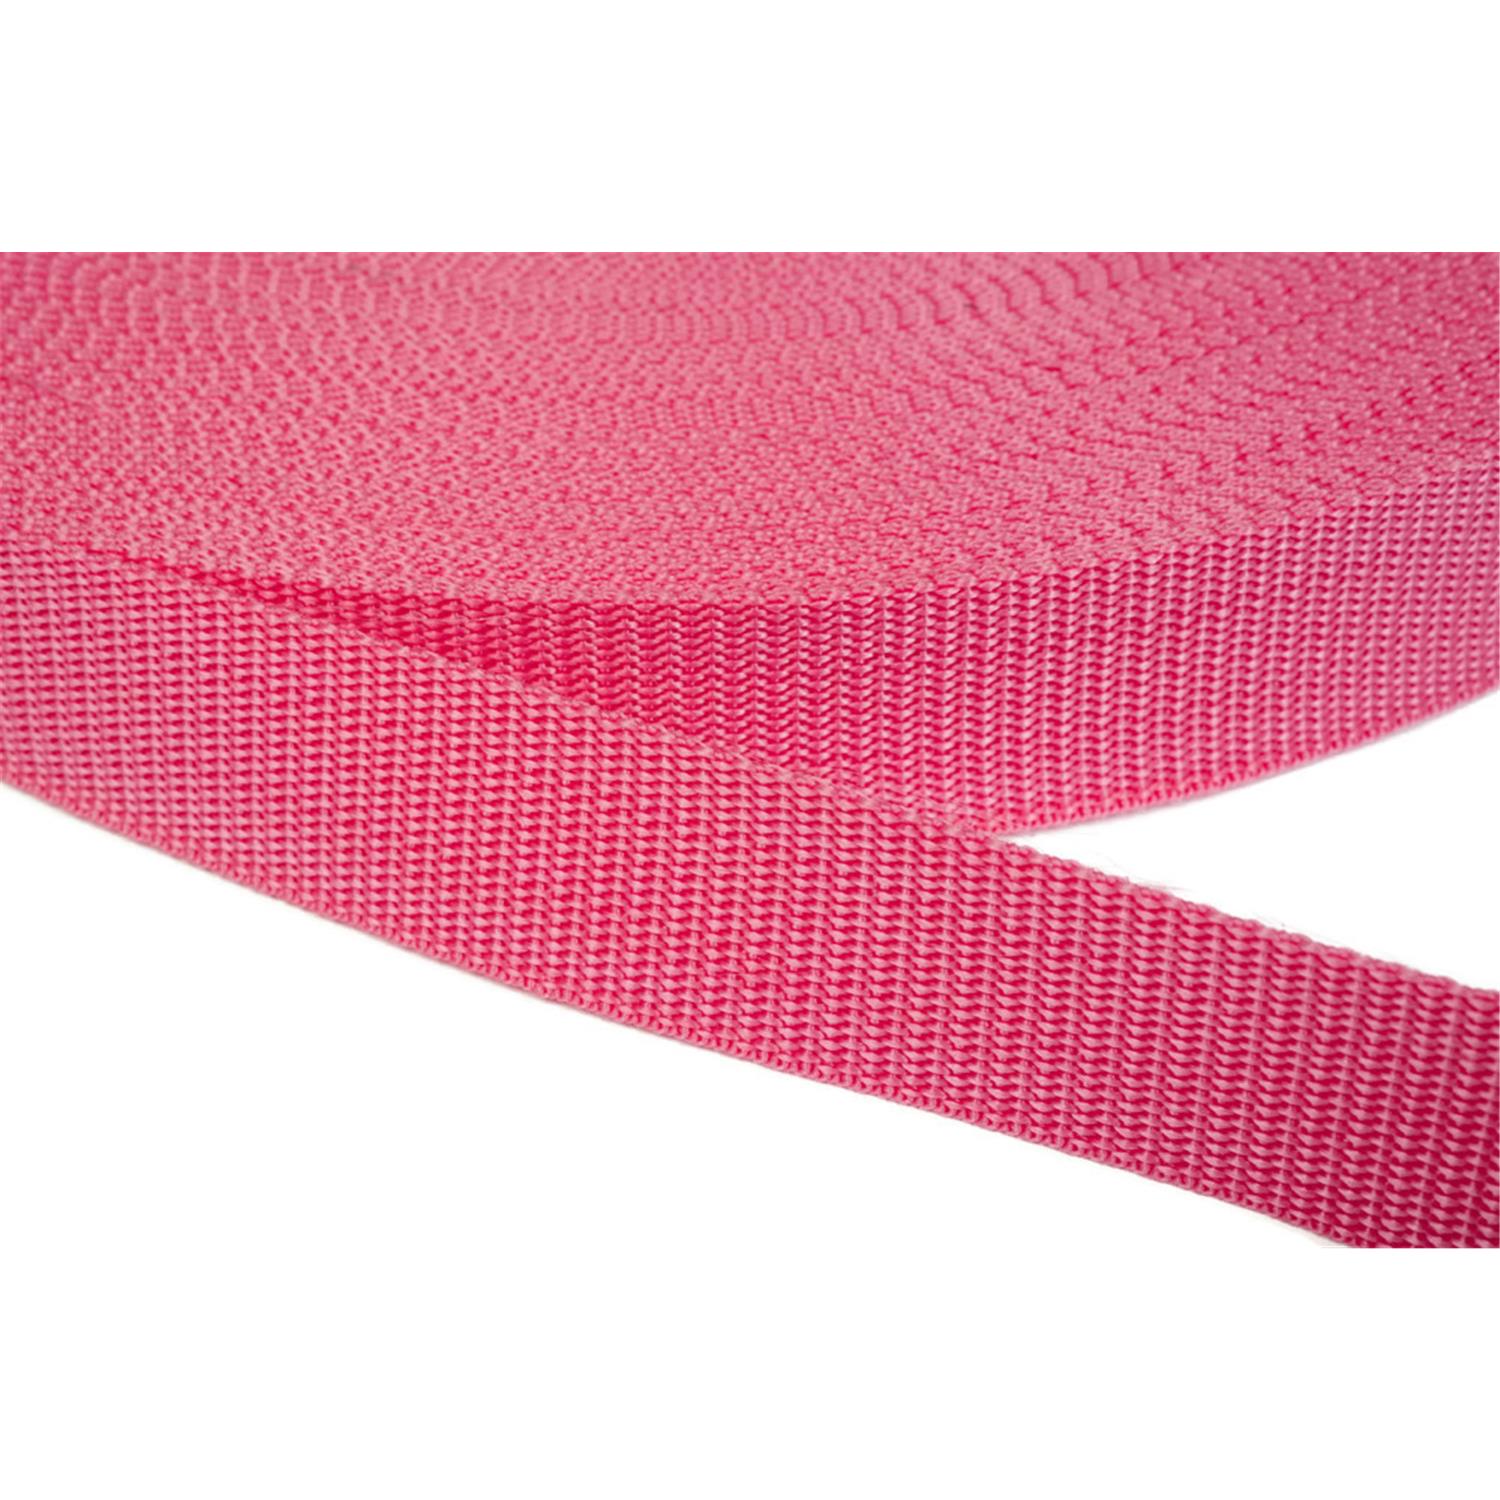 Gurtband 25mm breit aus Polypropylen in 41 Farben 13 - pink 12 Meter